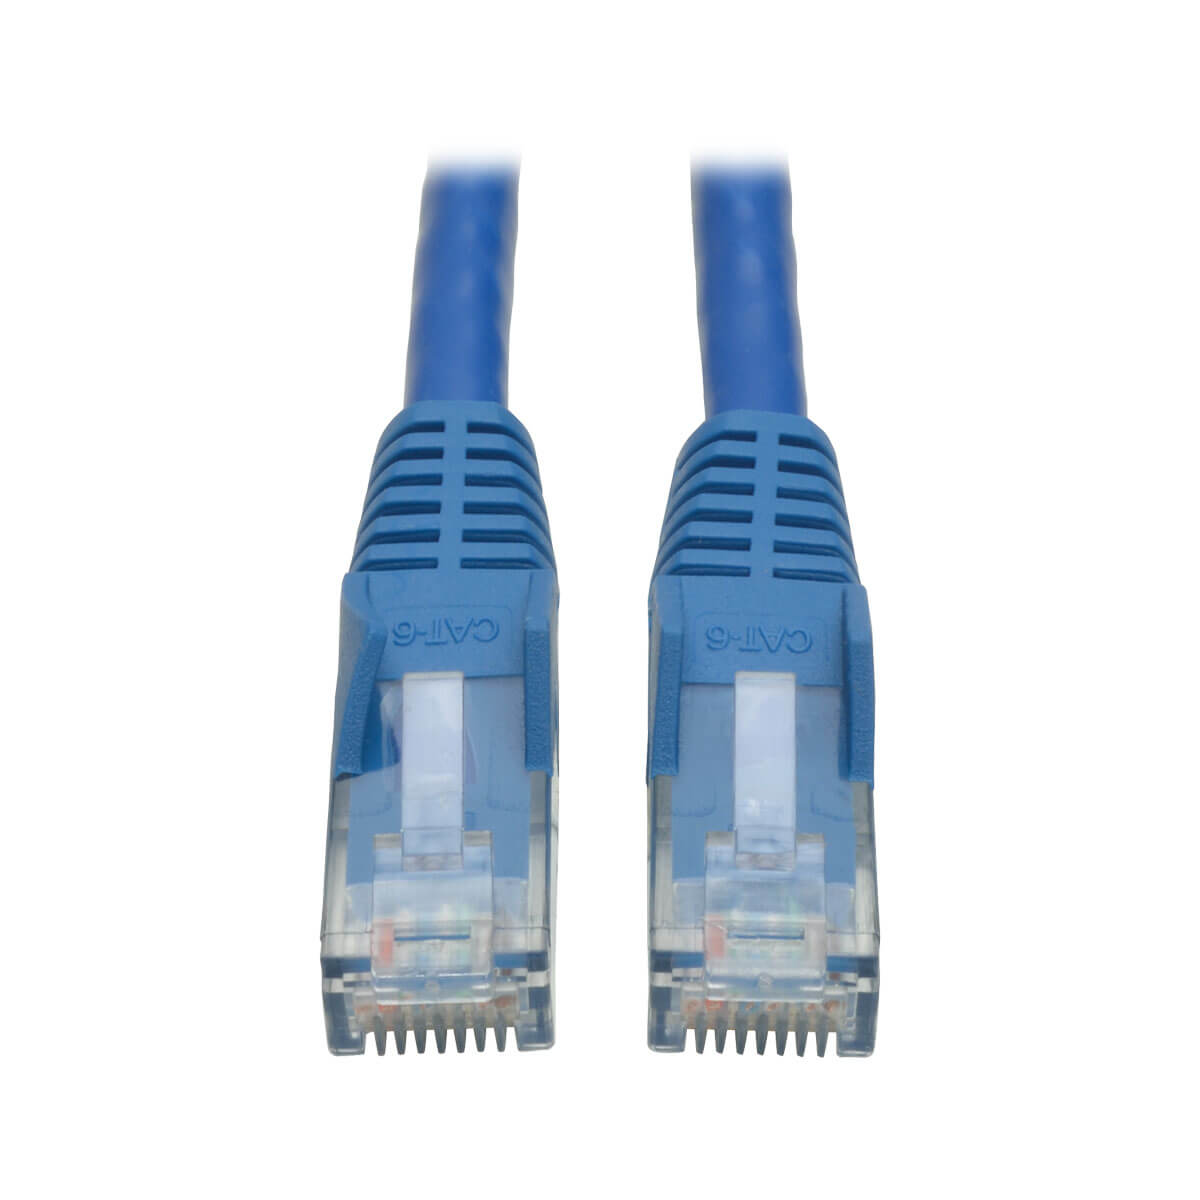 Cable Patch Tripp Lite Cat6 Utp Rj45 M/M Azul 6.10M N201-020-Bl